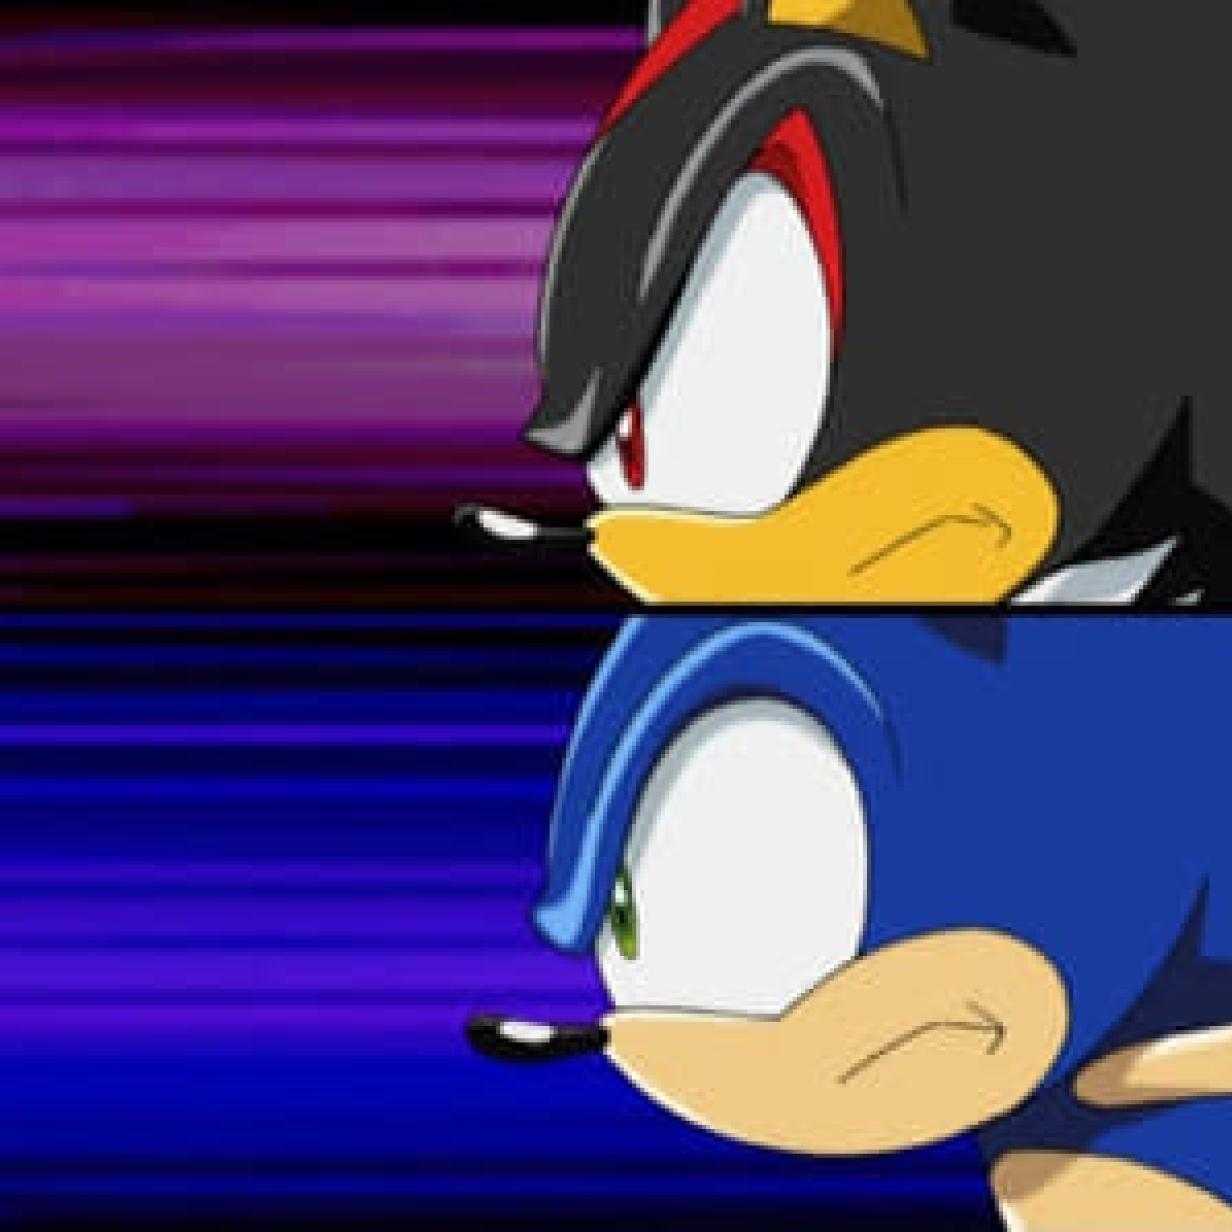 Sonic the Hedgehog 3: Guionistas falam da introdução de Shadow